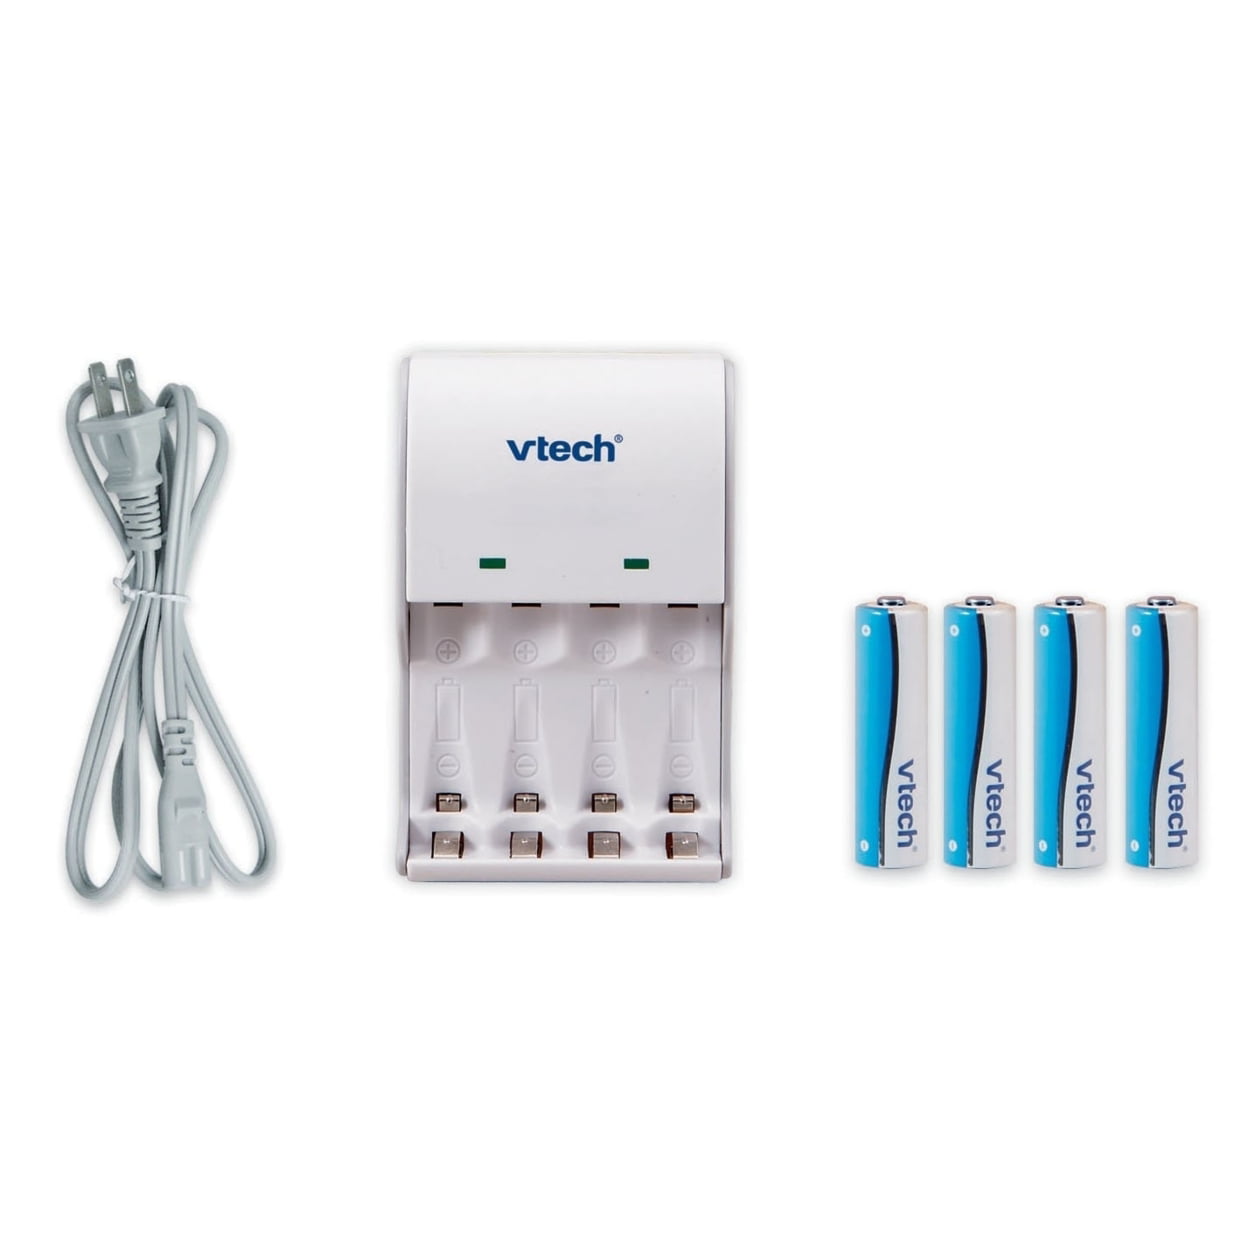 VTECH Pack chargeur + 4 piles AA/LR6 rechargeables VTECH pas cher